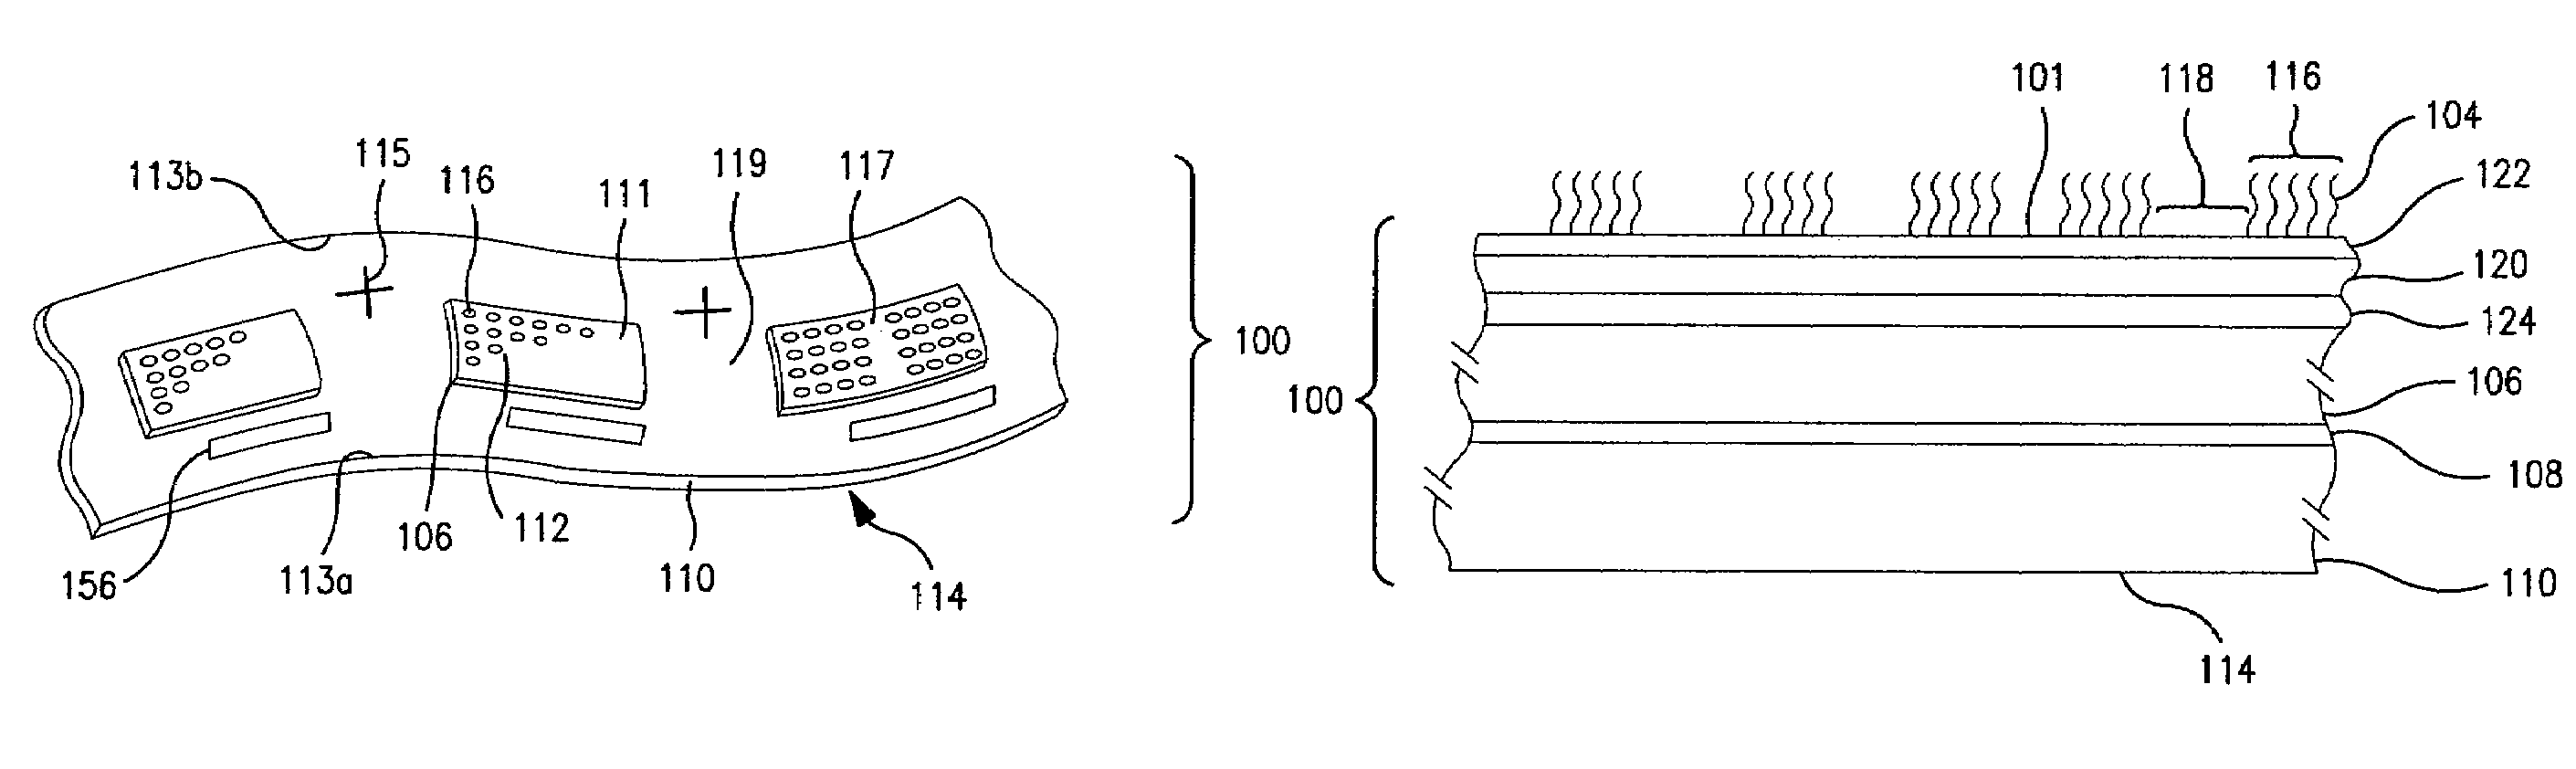 Integrated microfluidic array device